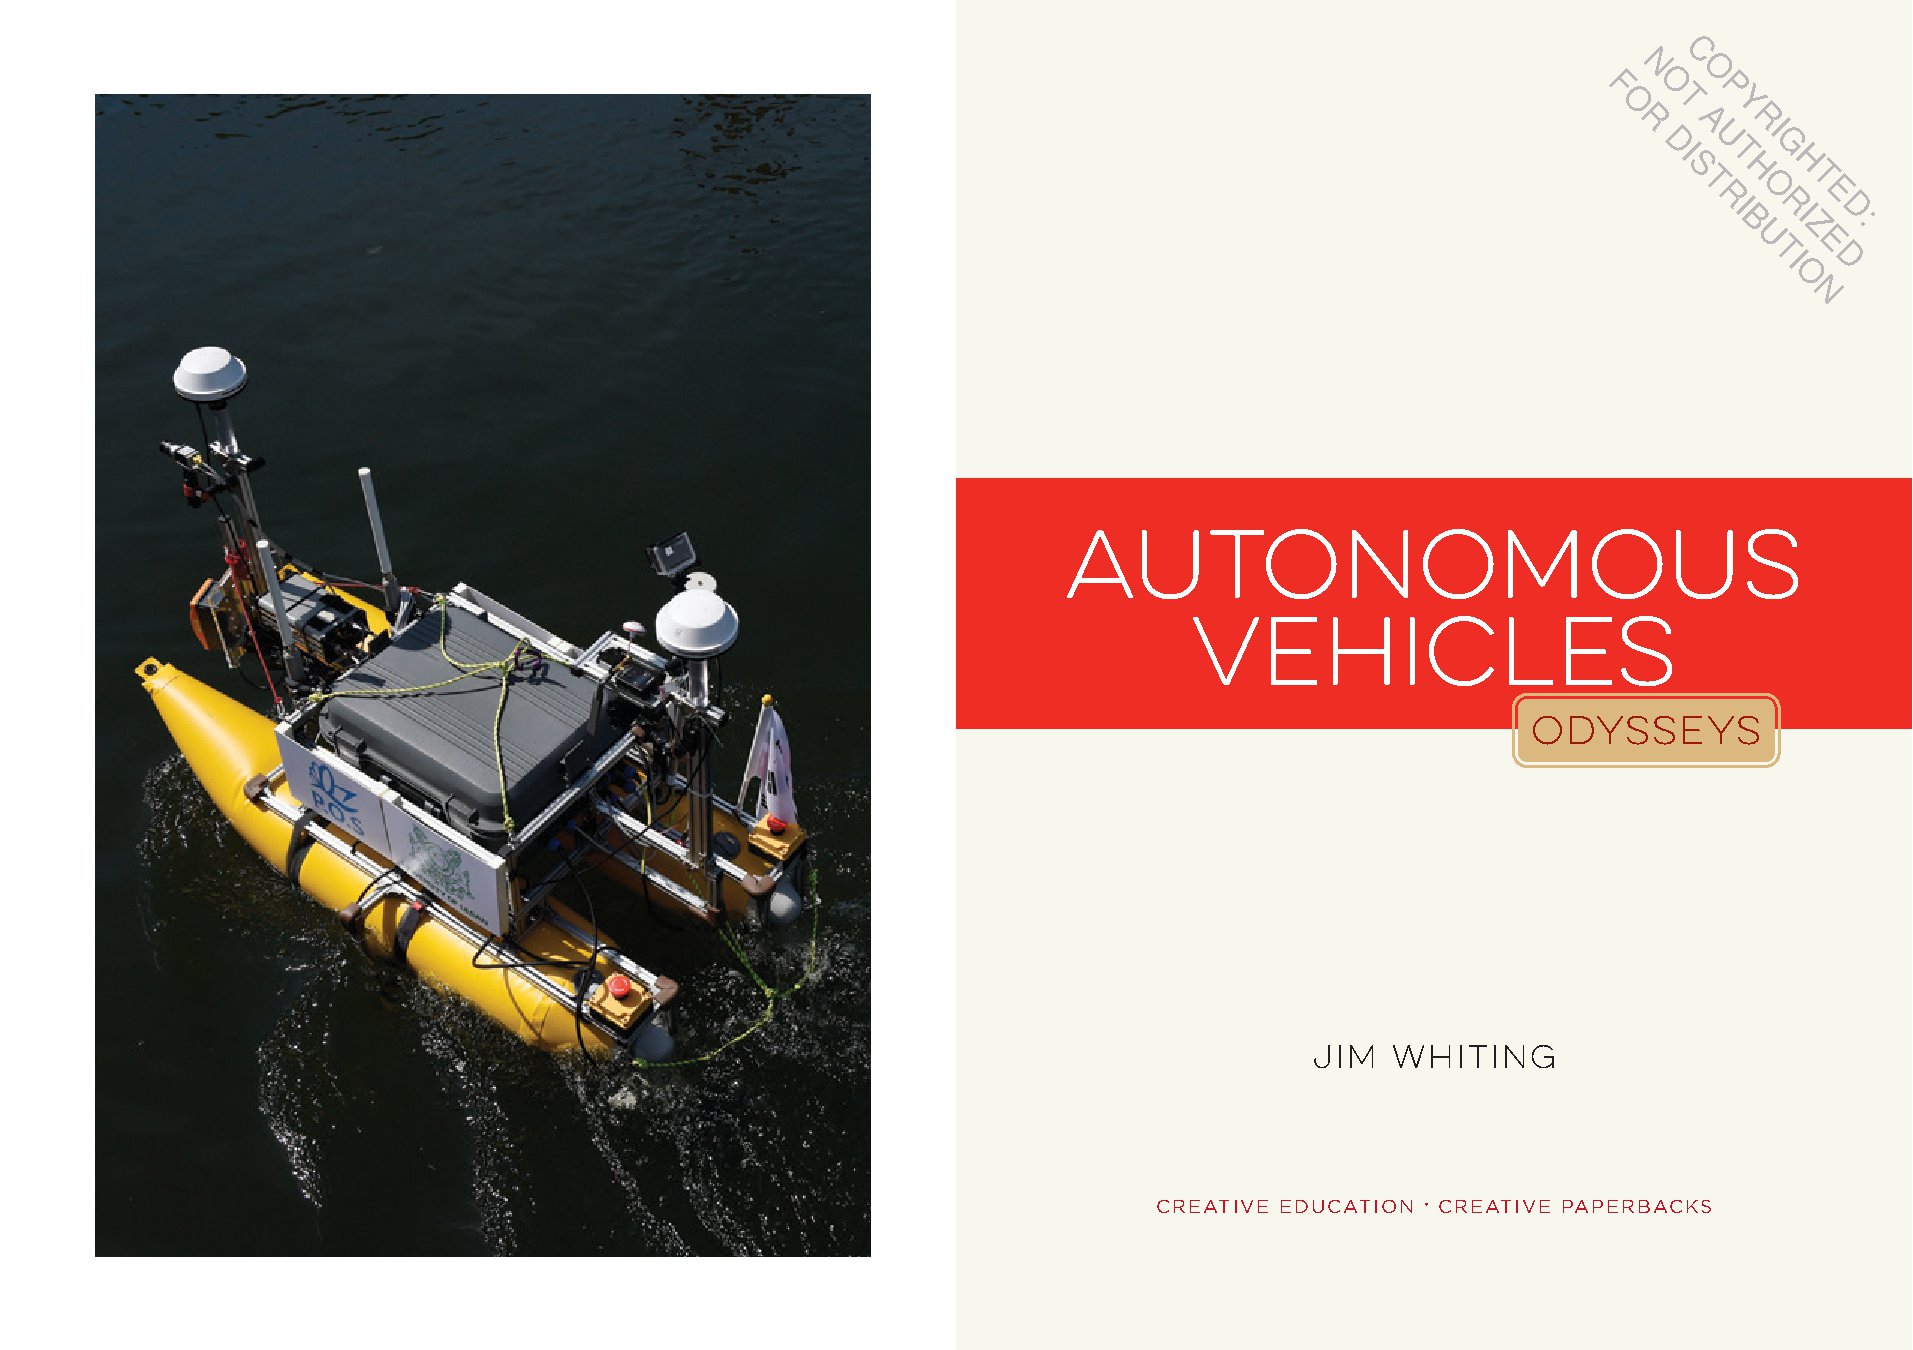 Autonomous Vehicles